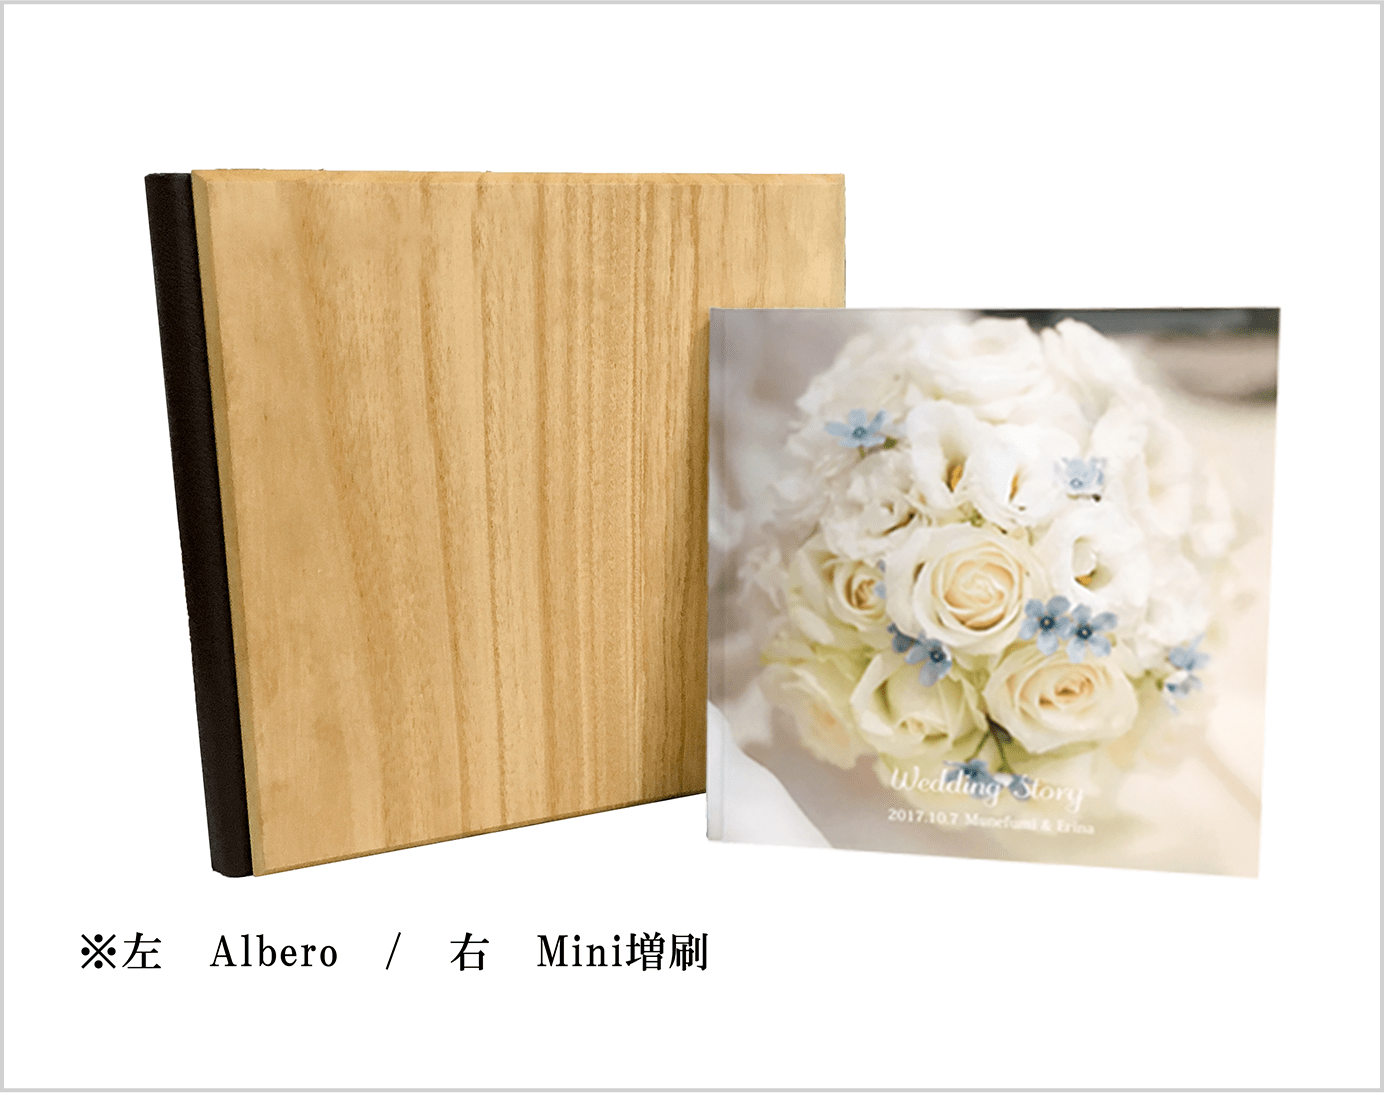 Mini増刷の結婚式アルバムとアルベロを並べた大きさ比較のイメージ。Mini増刷の最終ページに製本用のQRコードが入ります。